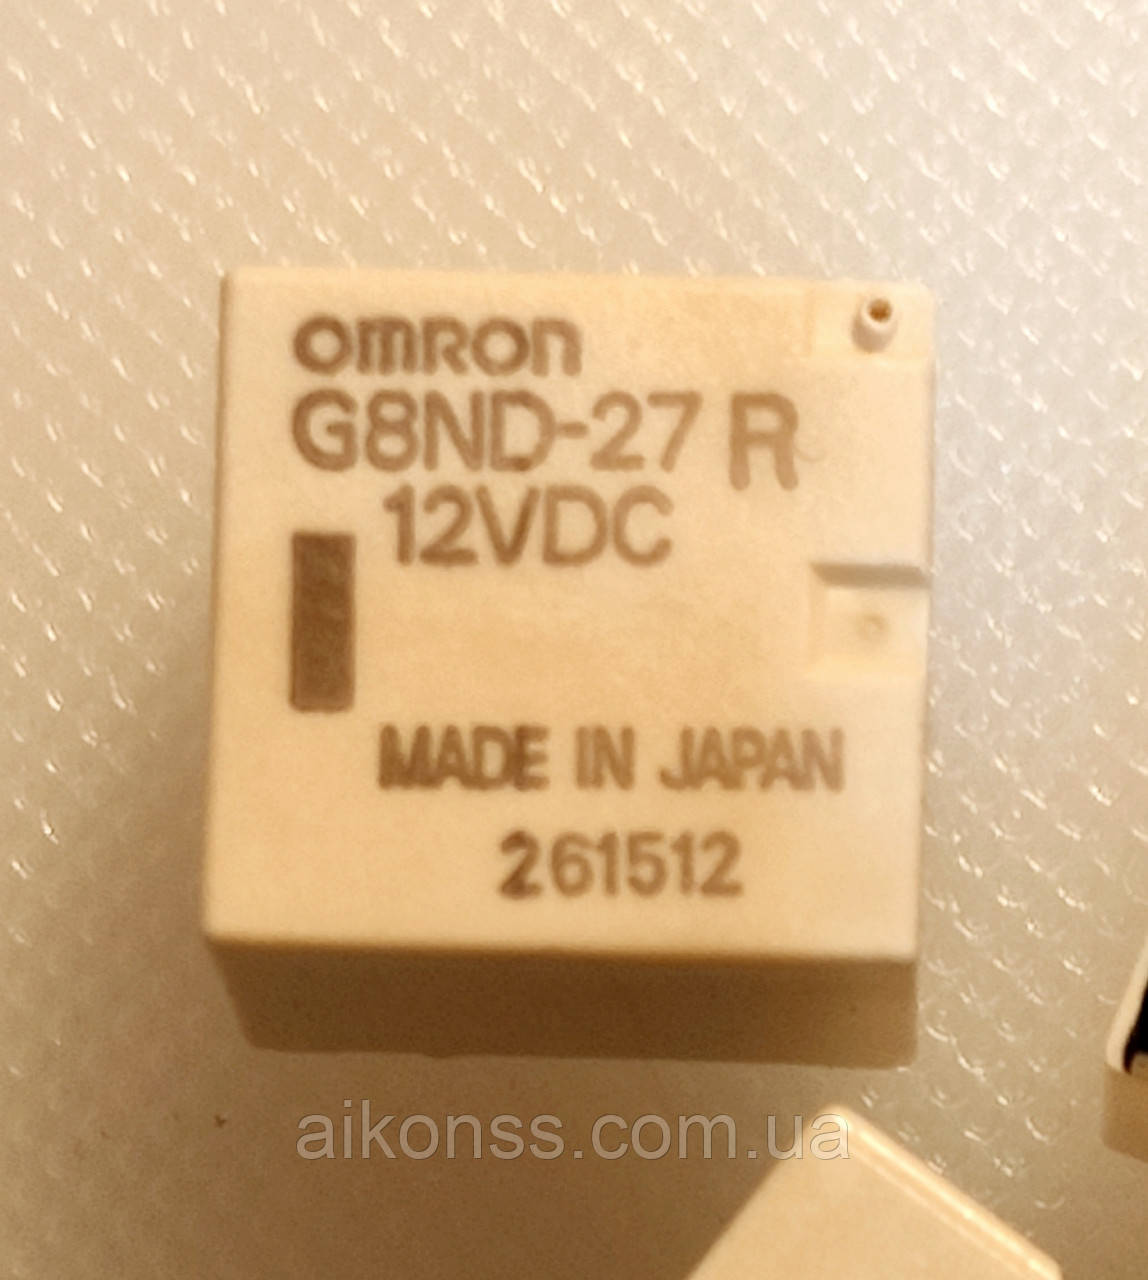 Реле OMRON G8ND-27R 12VDC . корпус DIP8 . Нові .  Japan .